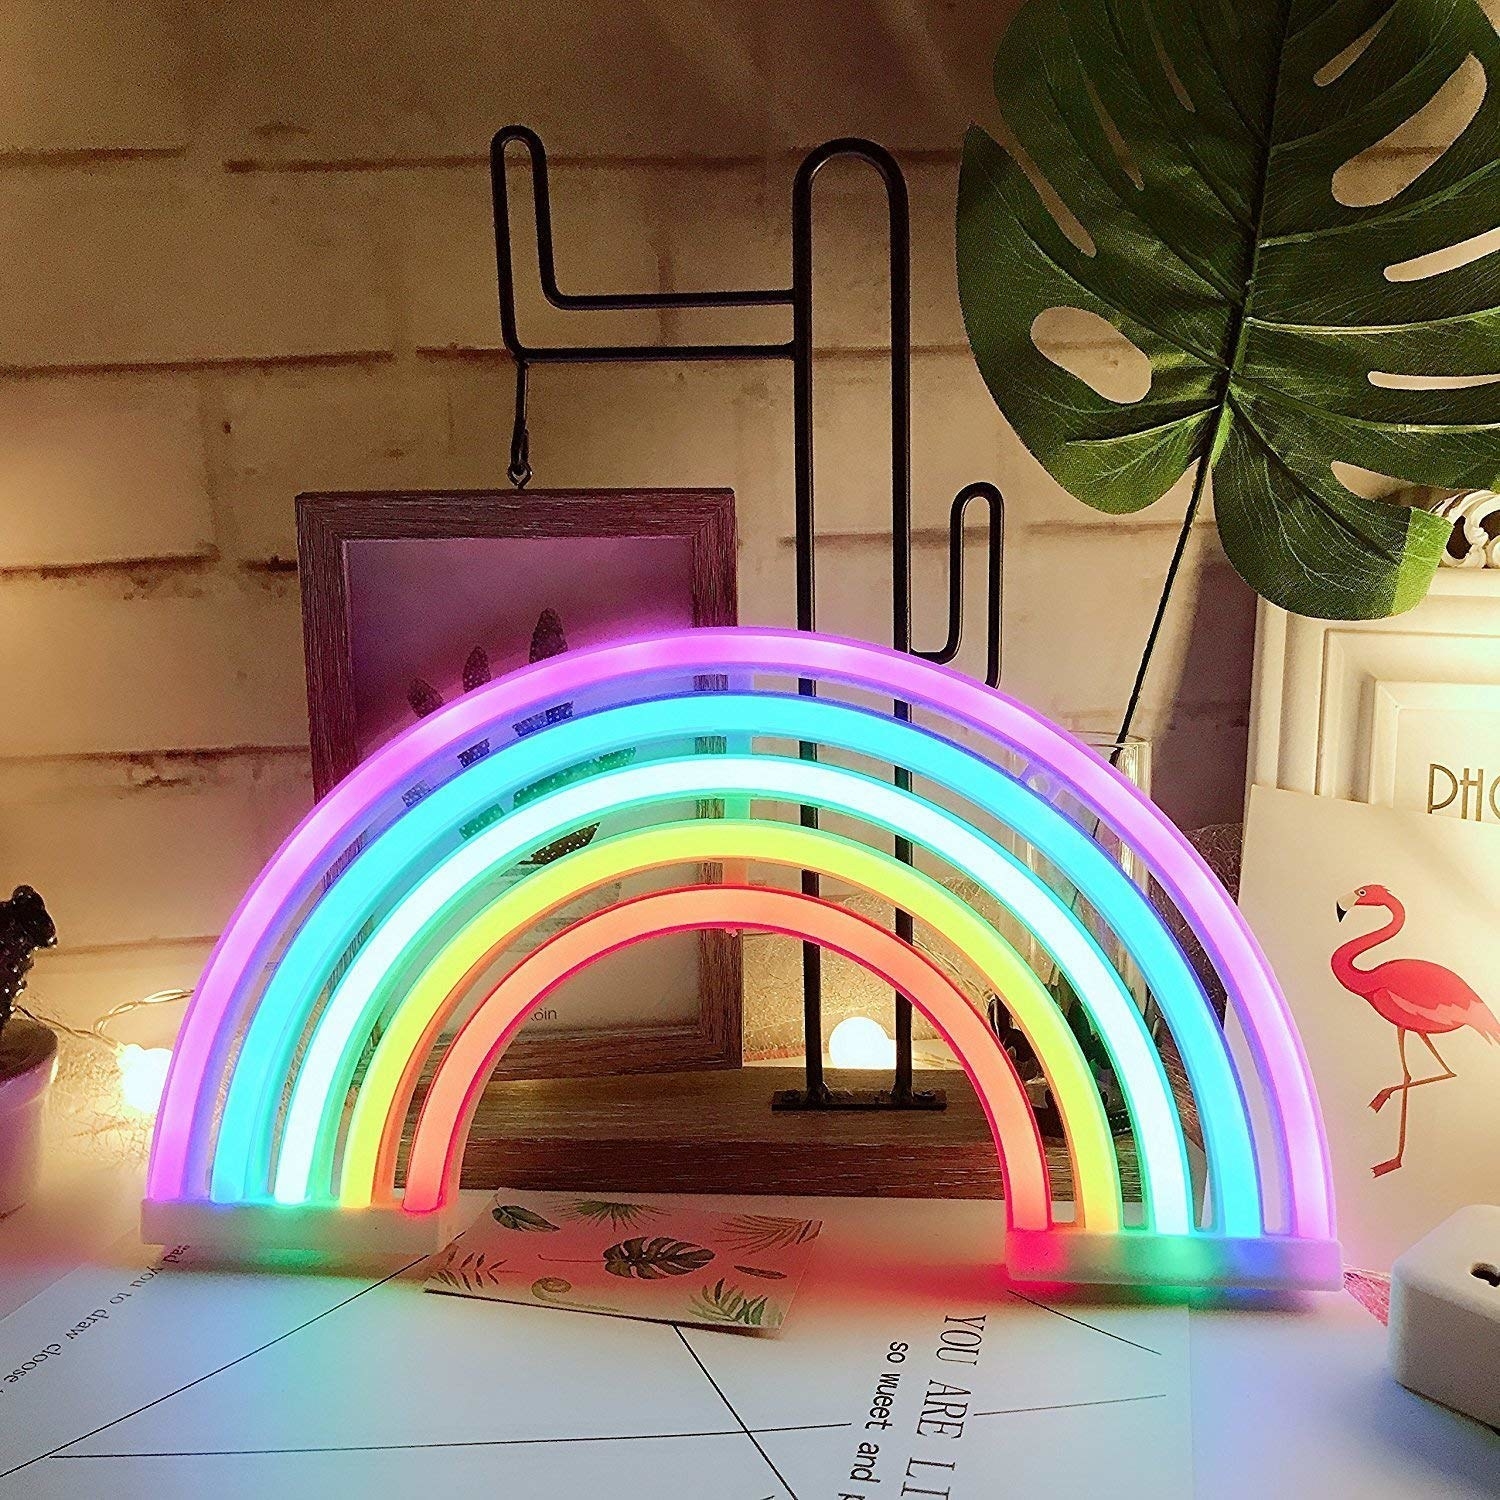 A neon rainbow light on a desk